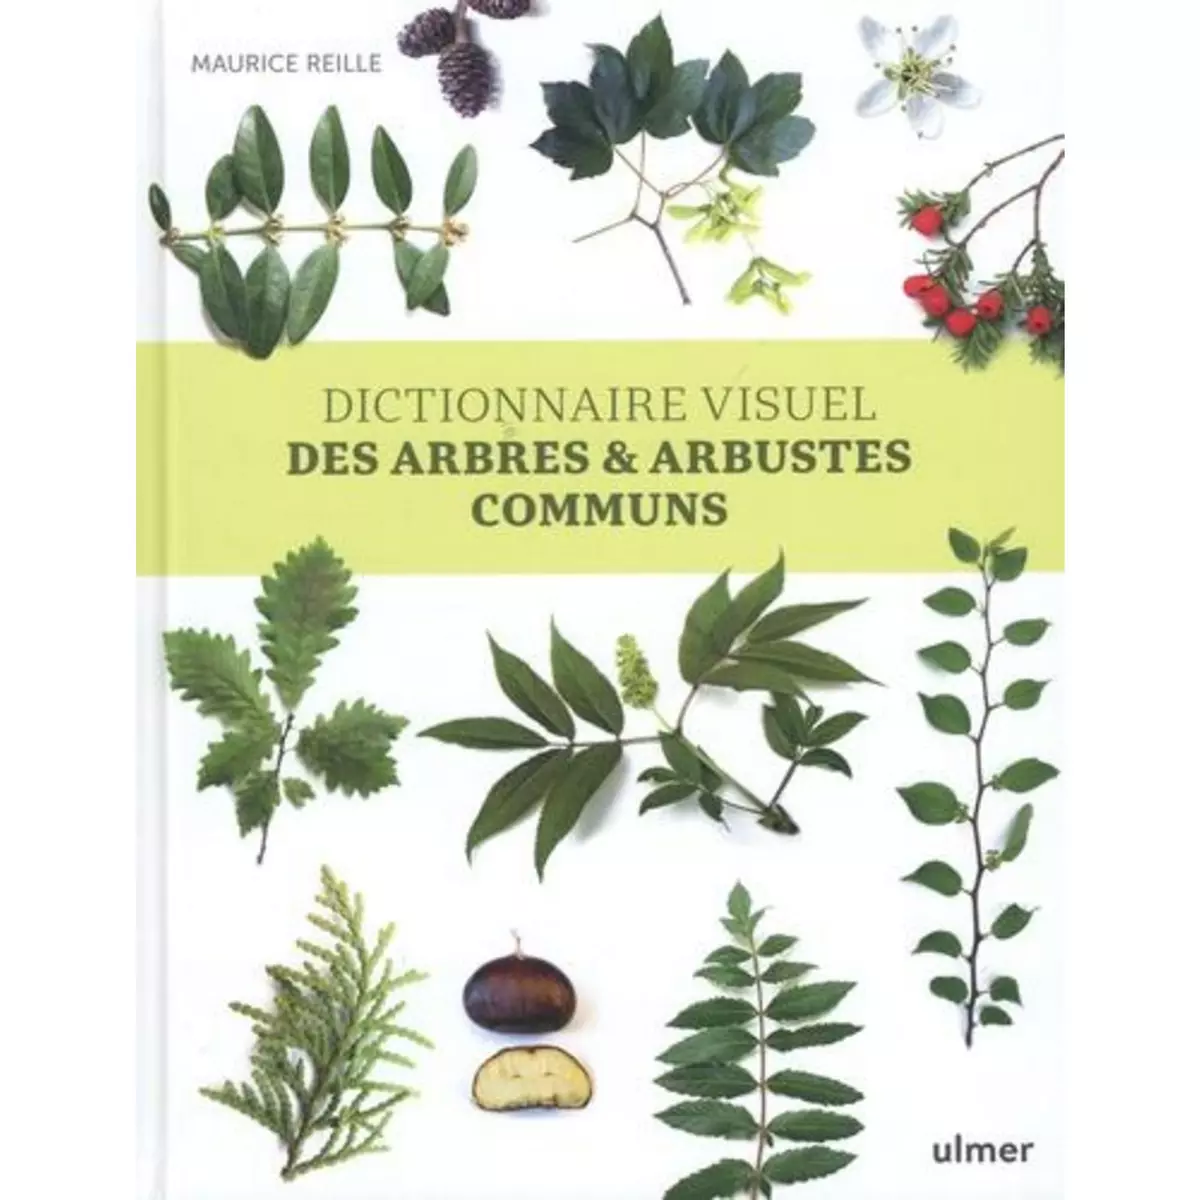  DICTIONNAIRE VISUEL DES ARBRES & ARBUSTES COMMUNS, Reille Maurice